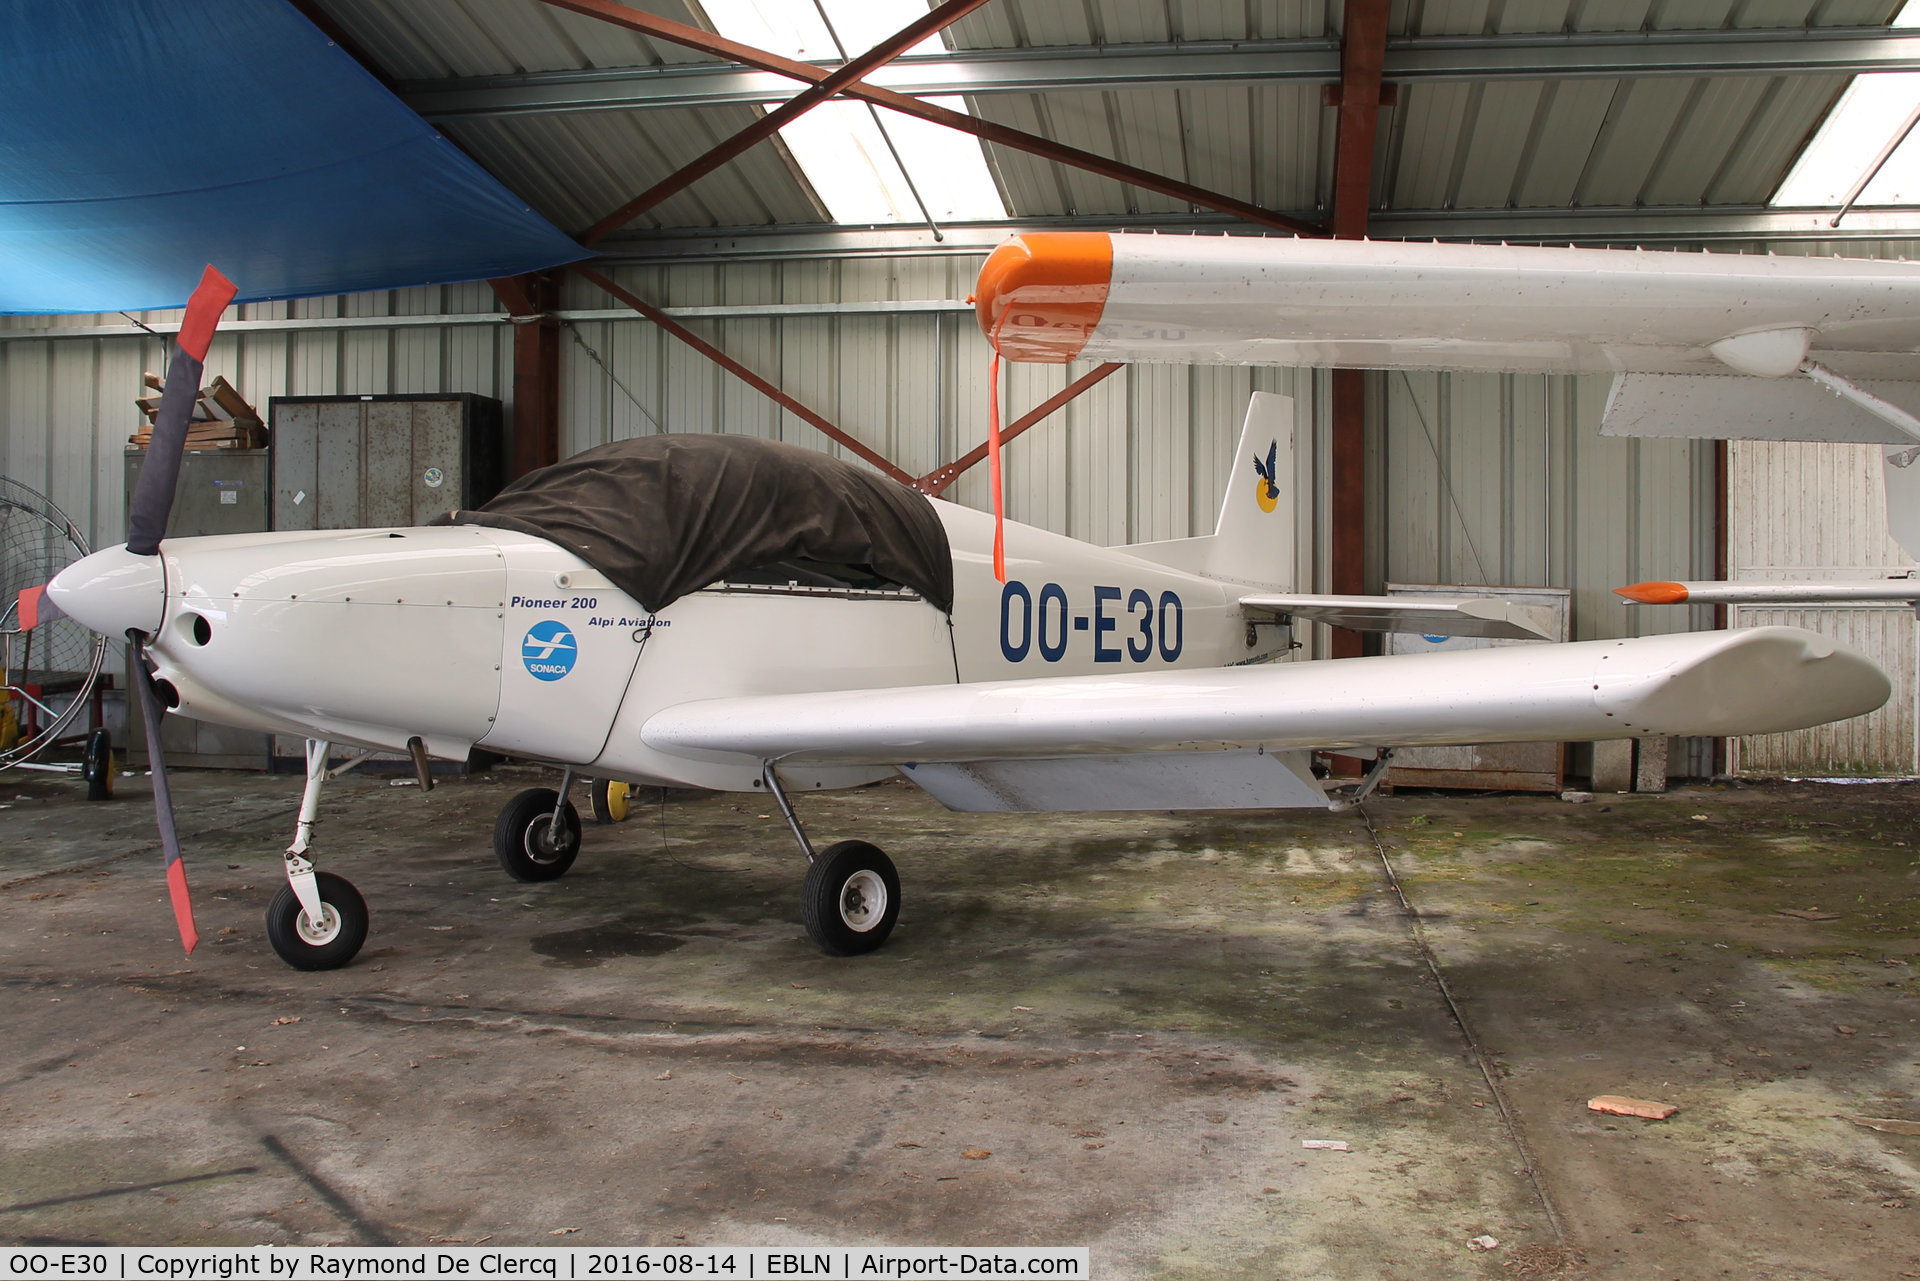 OO-E30, 2003 Alpi Aviation Pioneer 200 C/N 38, At Liernu.